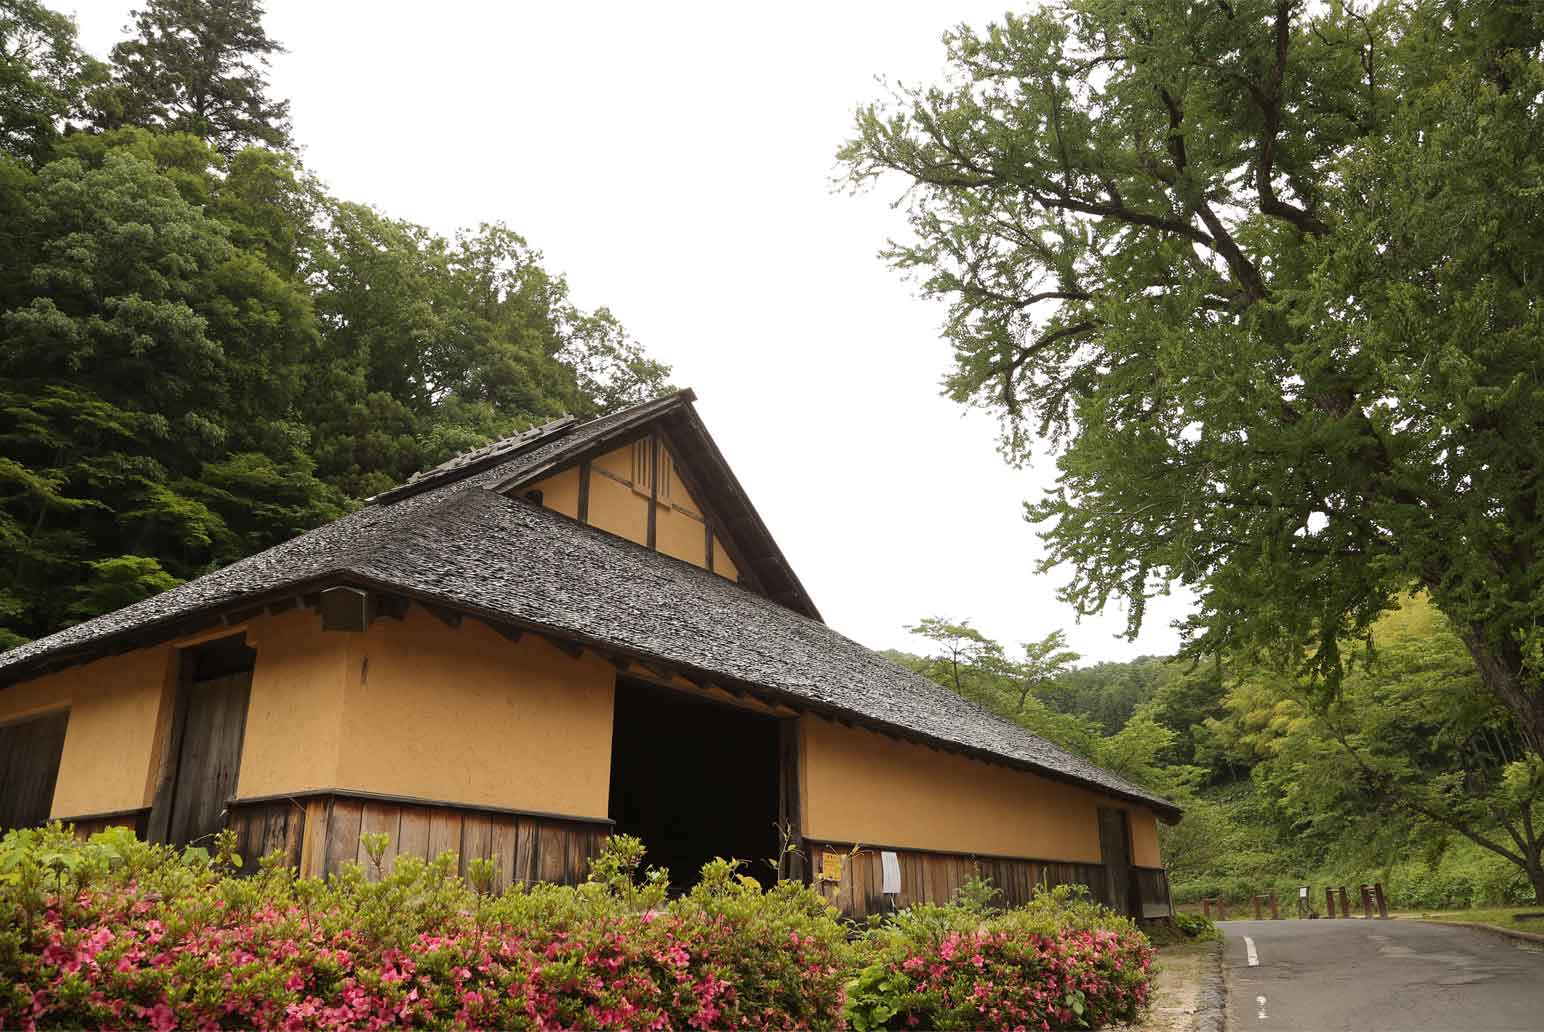 全國唯一僅存的吹踏鞴冶煉遺跡──「菅谷高殿 」。